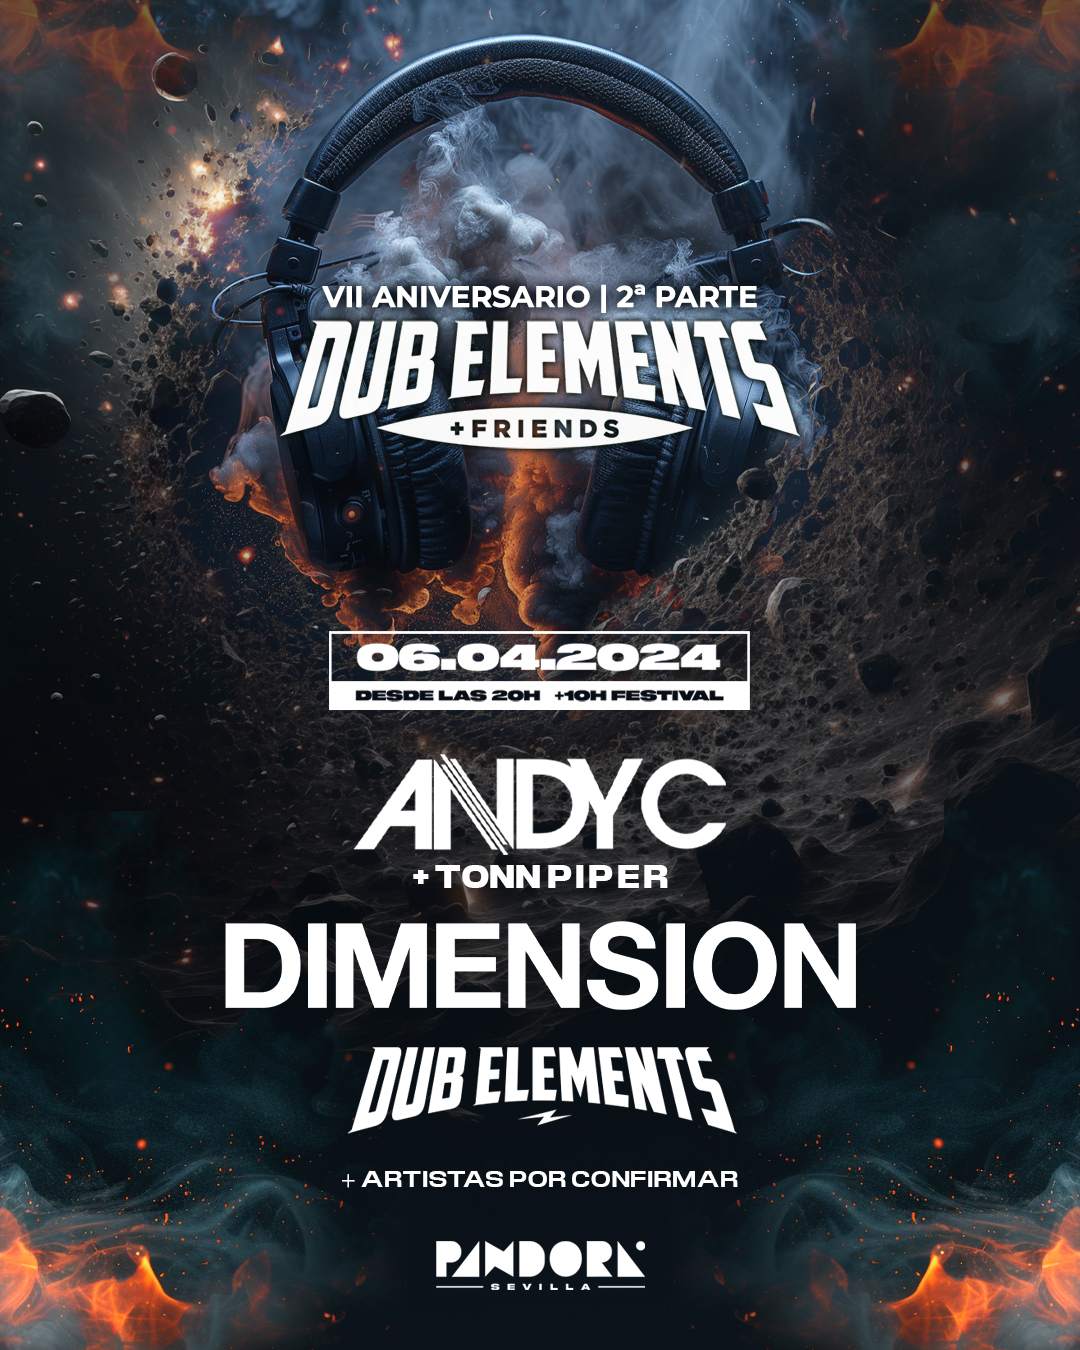 Dub Elements + Friends con Andy C y Dimension - Página frontal